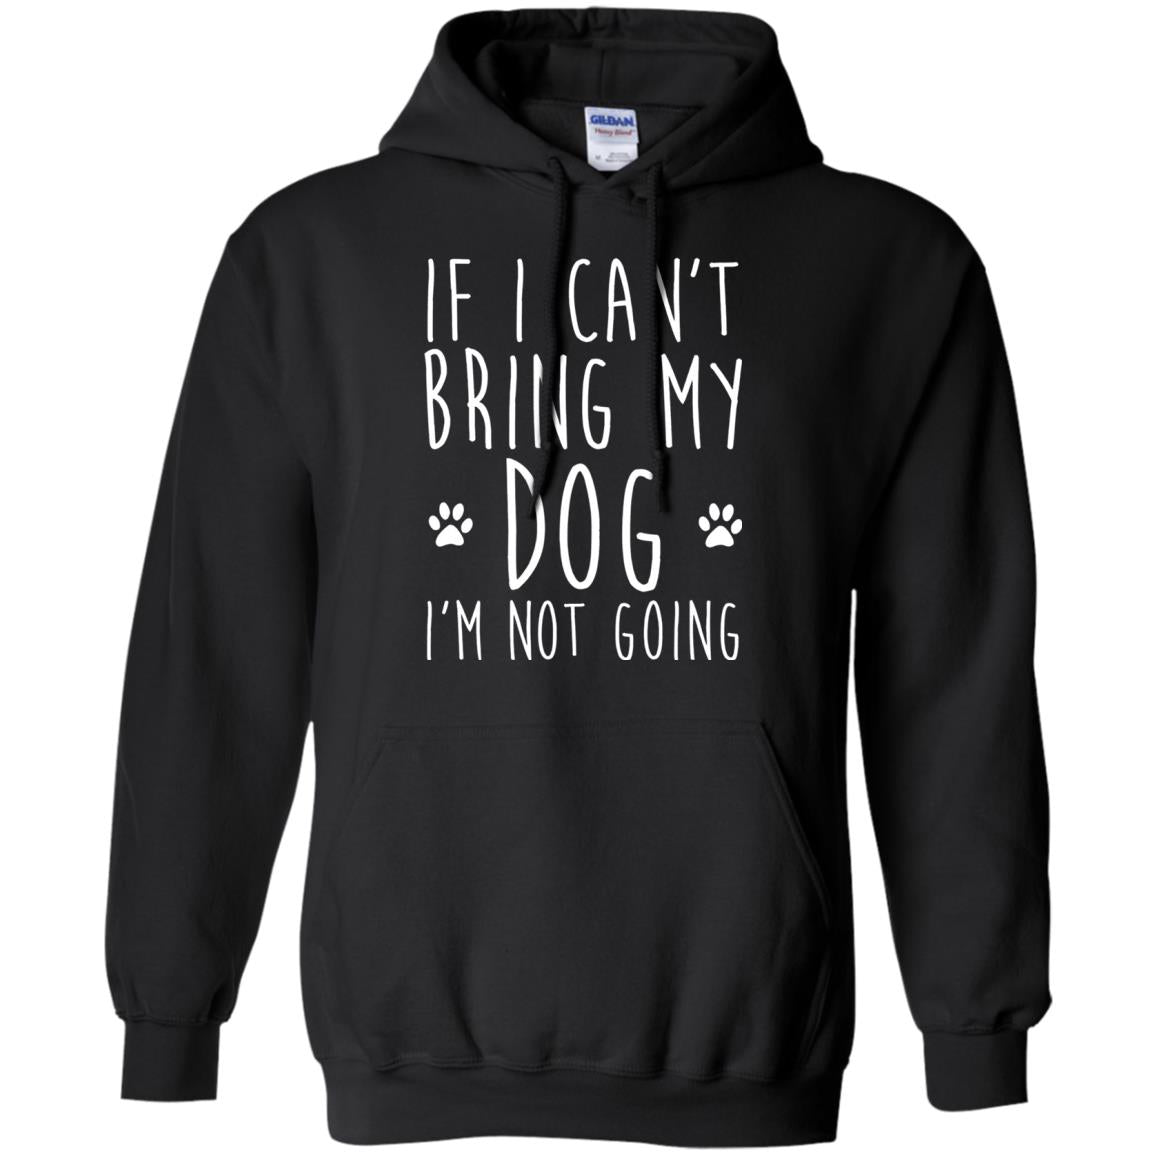 If I Can_t Bring My Dog I_m Not Going T-shirt Dog Lover